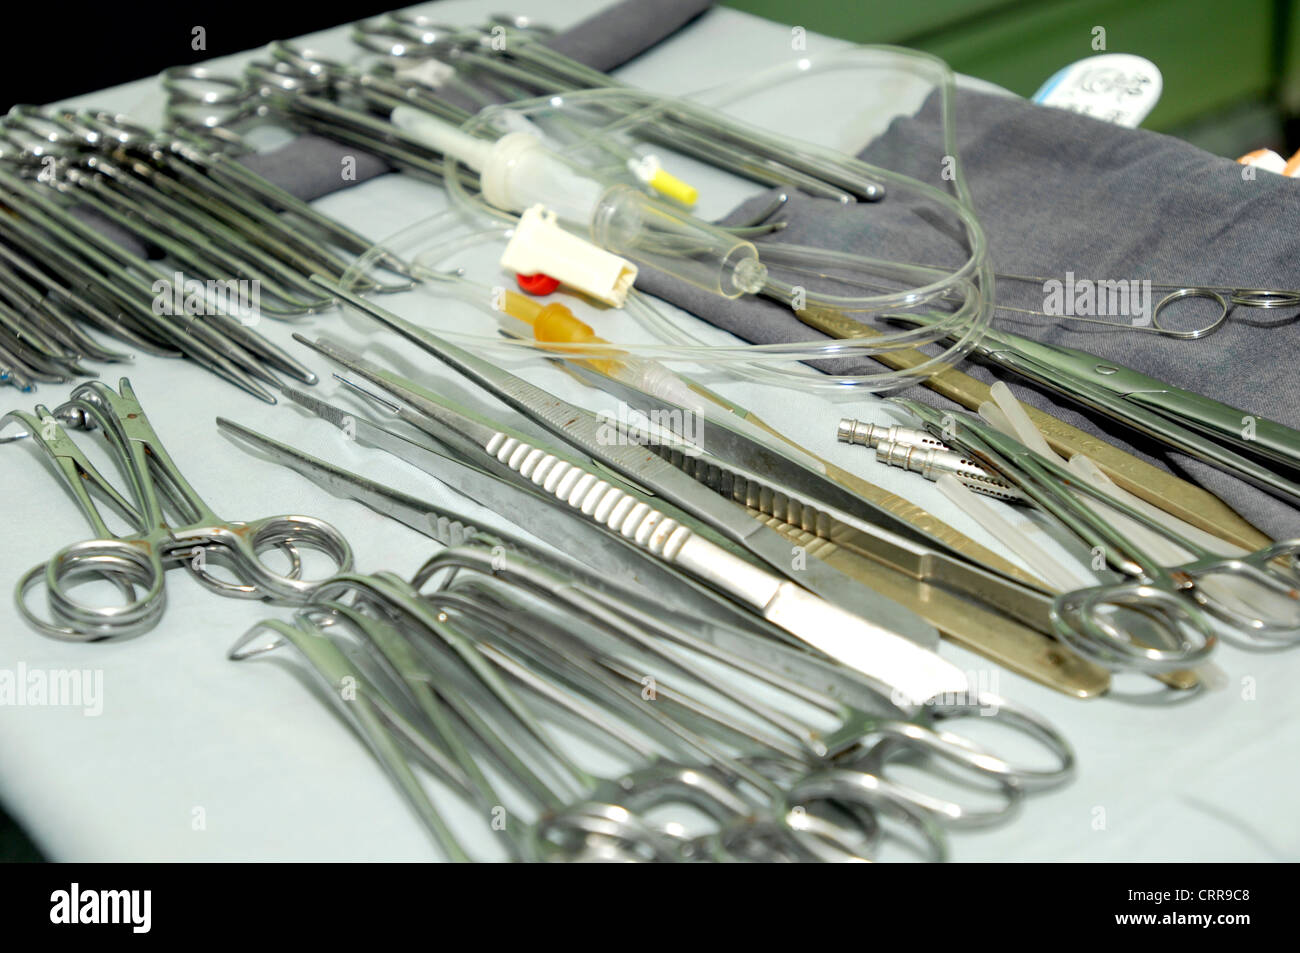 Les instruments chirurgicaux préparés pour l'intervention (avec set de perfusion). Banque D'Images